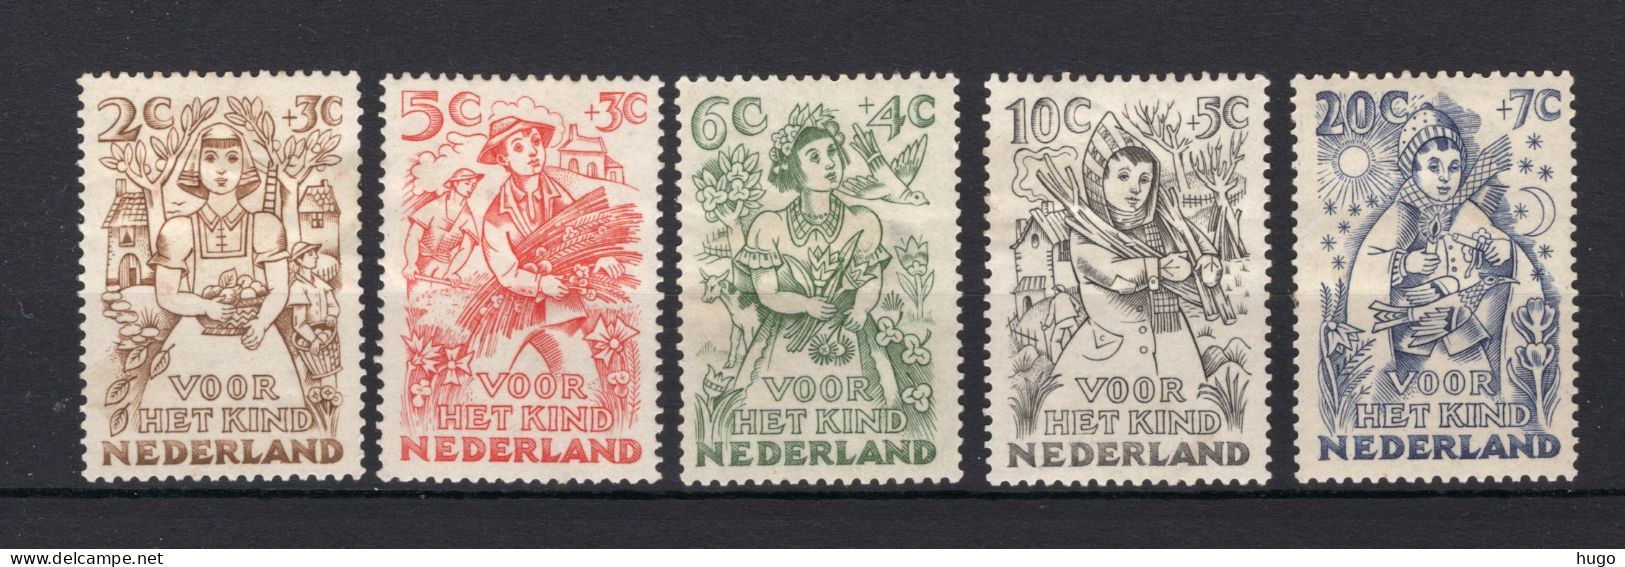 NEDERLAND 544/548 MH 1949 - Kinderzegels - Ongebruikt